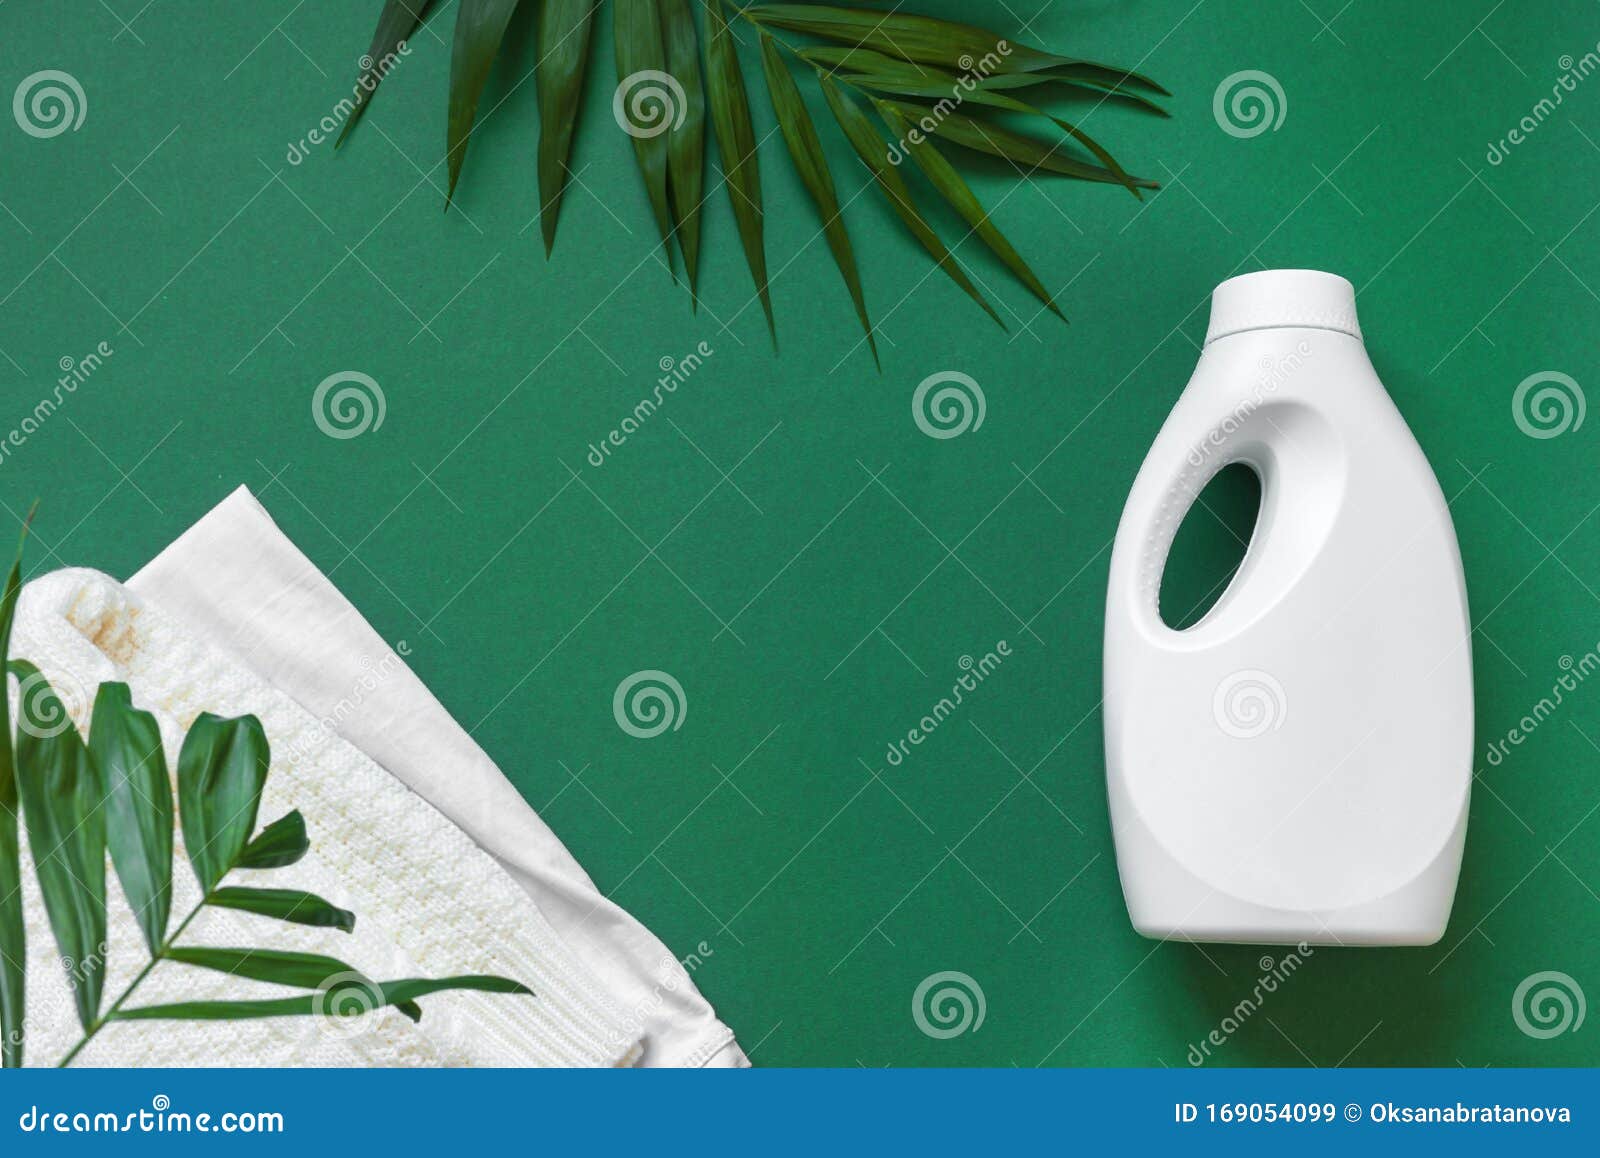 Detergente Para Ropa Ecológica Imagen de archivo - Imagen de botellas,  publicidad: 169054099